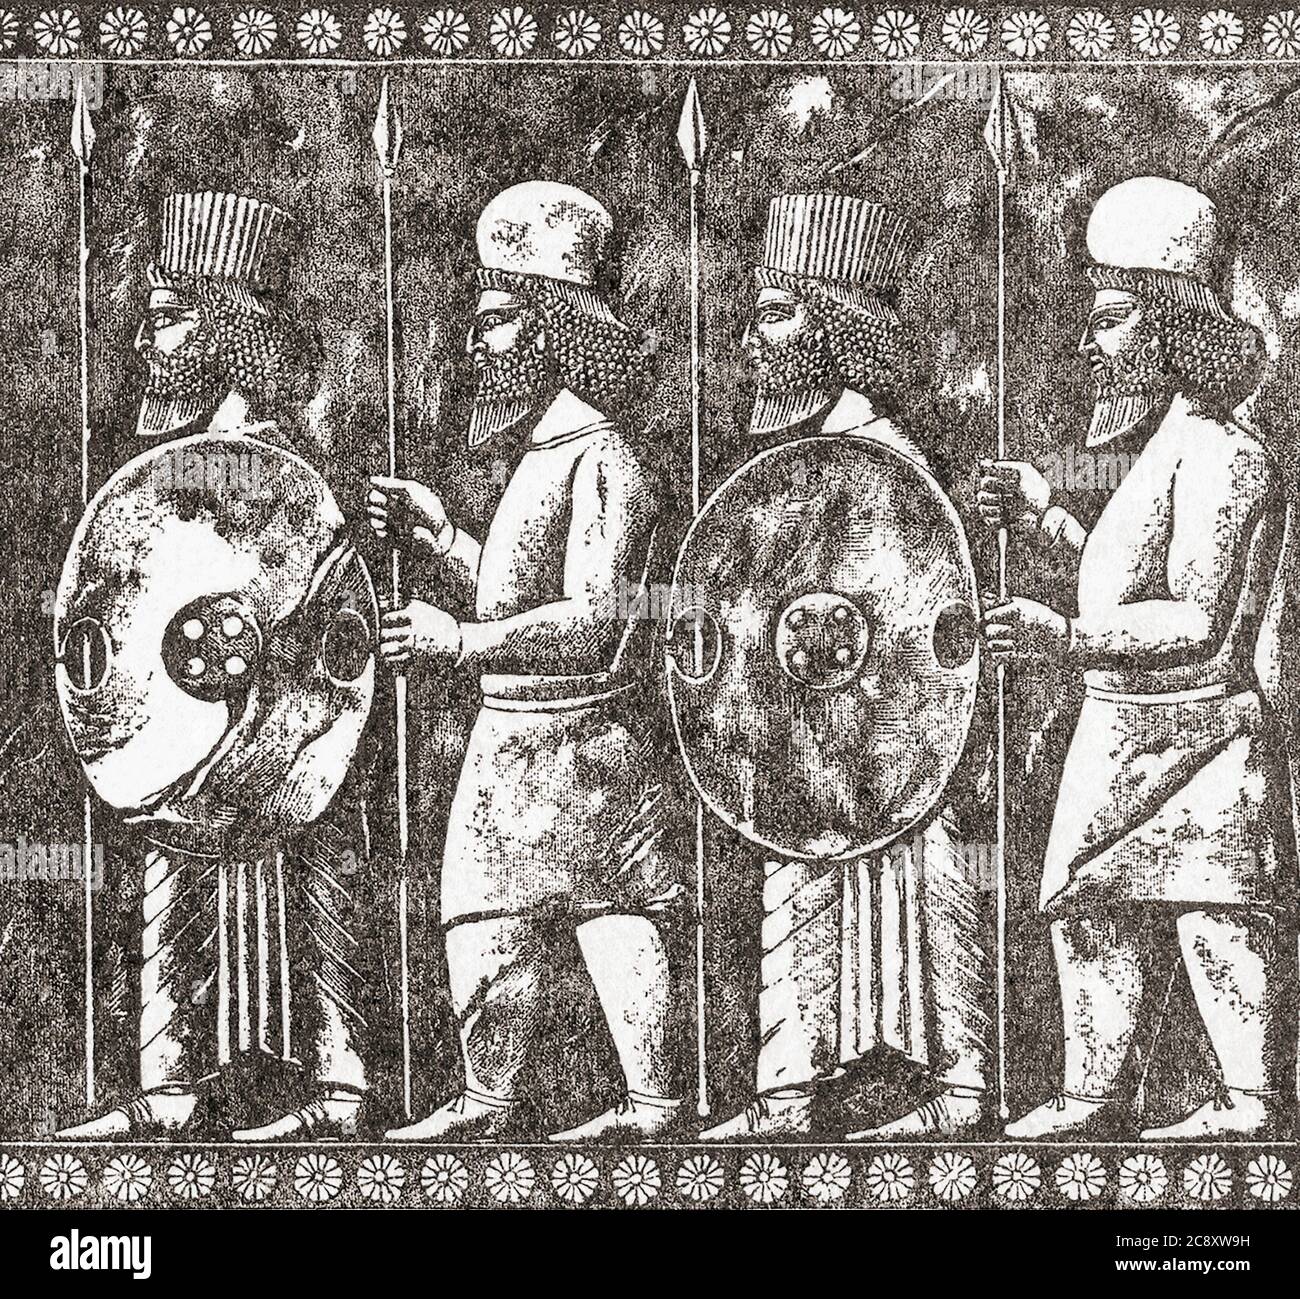 Median und persische Fußsoldaten. Die Medes waren ein Mesoptamian Volk, nachdem ihre Stämme bildeten das medianische Königreich wurde neo-assyrische Vasallen. Durch verschiedene Allianzen zerstörten sie anschließend das neo-assyrische Reich und wurden mit ihren Verbündeten zur dominierenden Kraft in Mesopotamien als das medianische Reich. Nach einer Illustration eines unbekannten Künstlers aus dem 19. Jahrhundert. Stockfoto